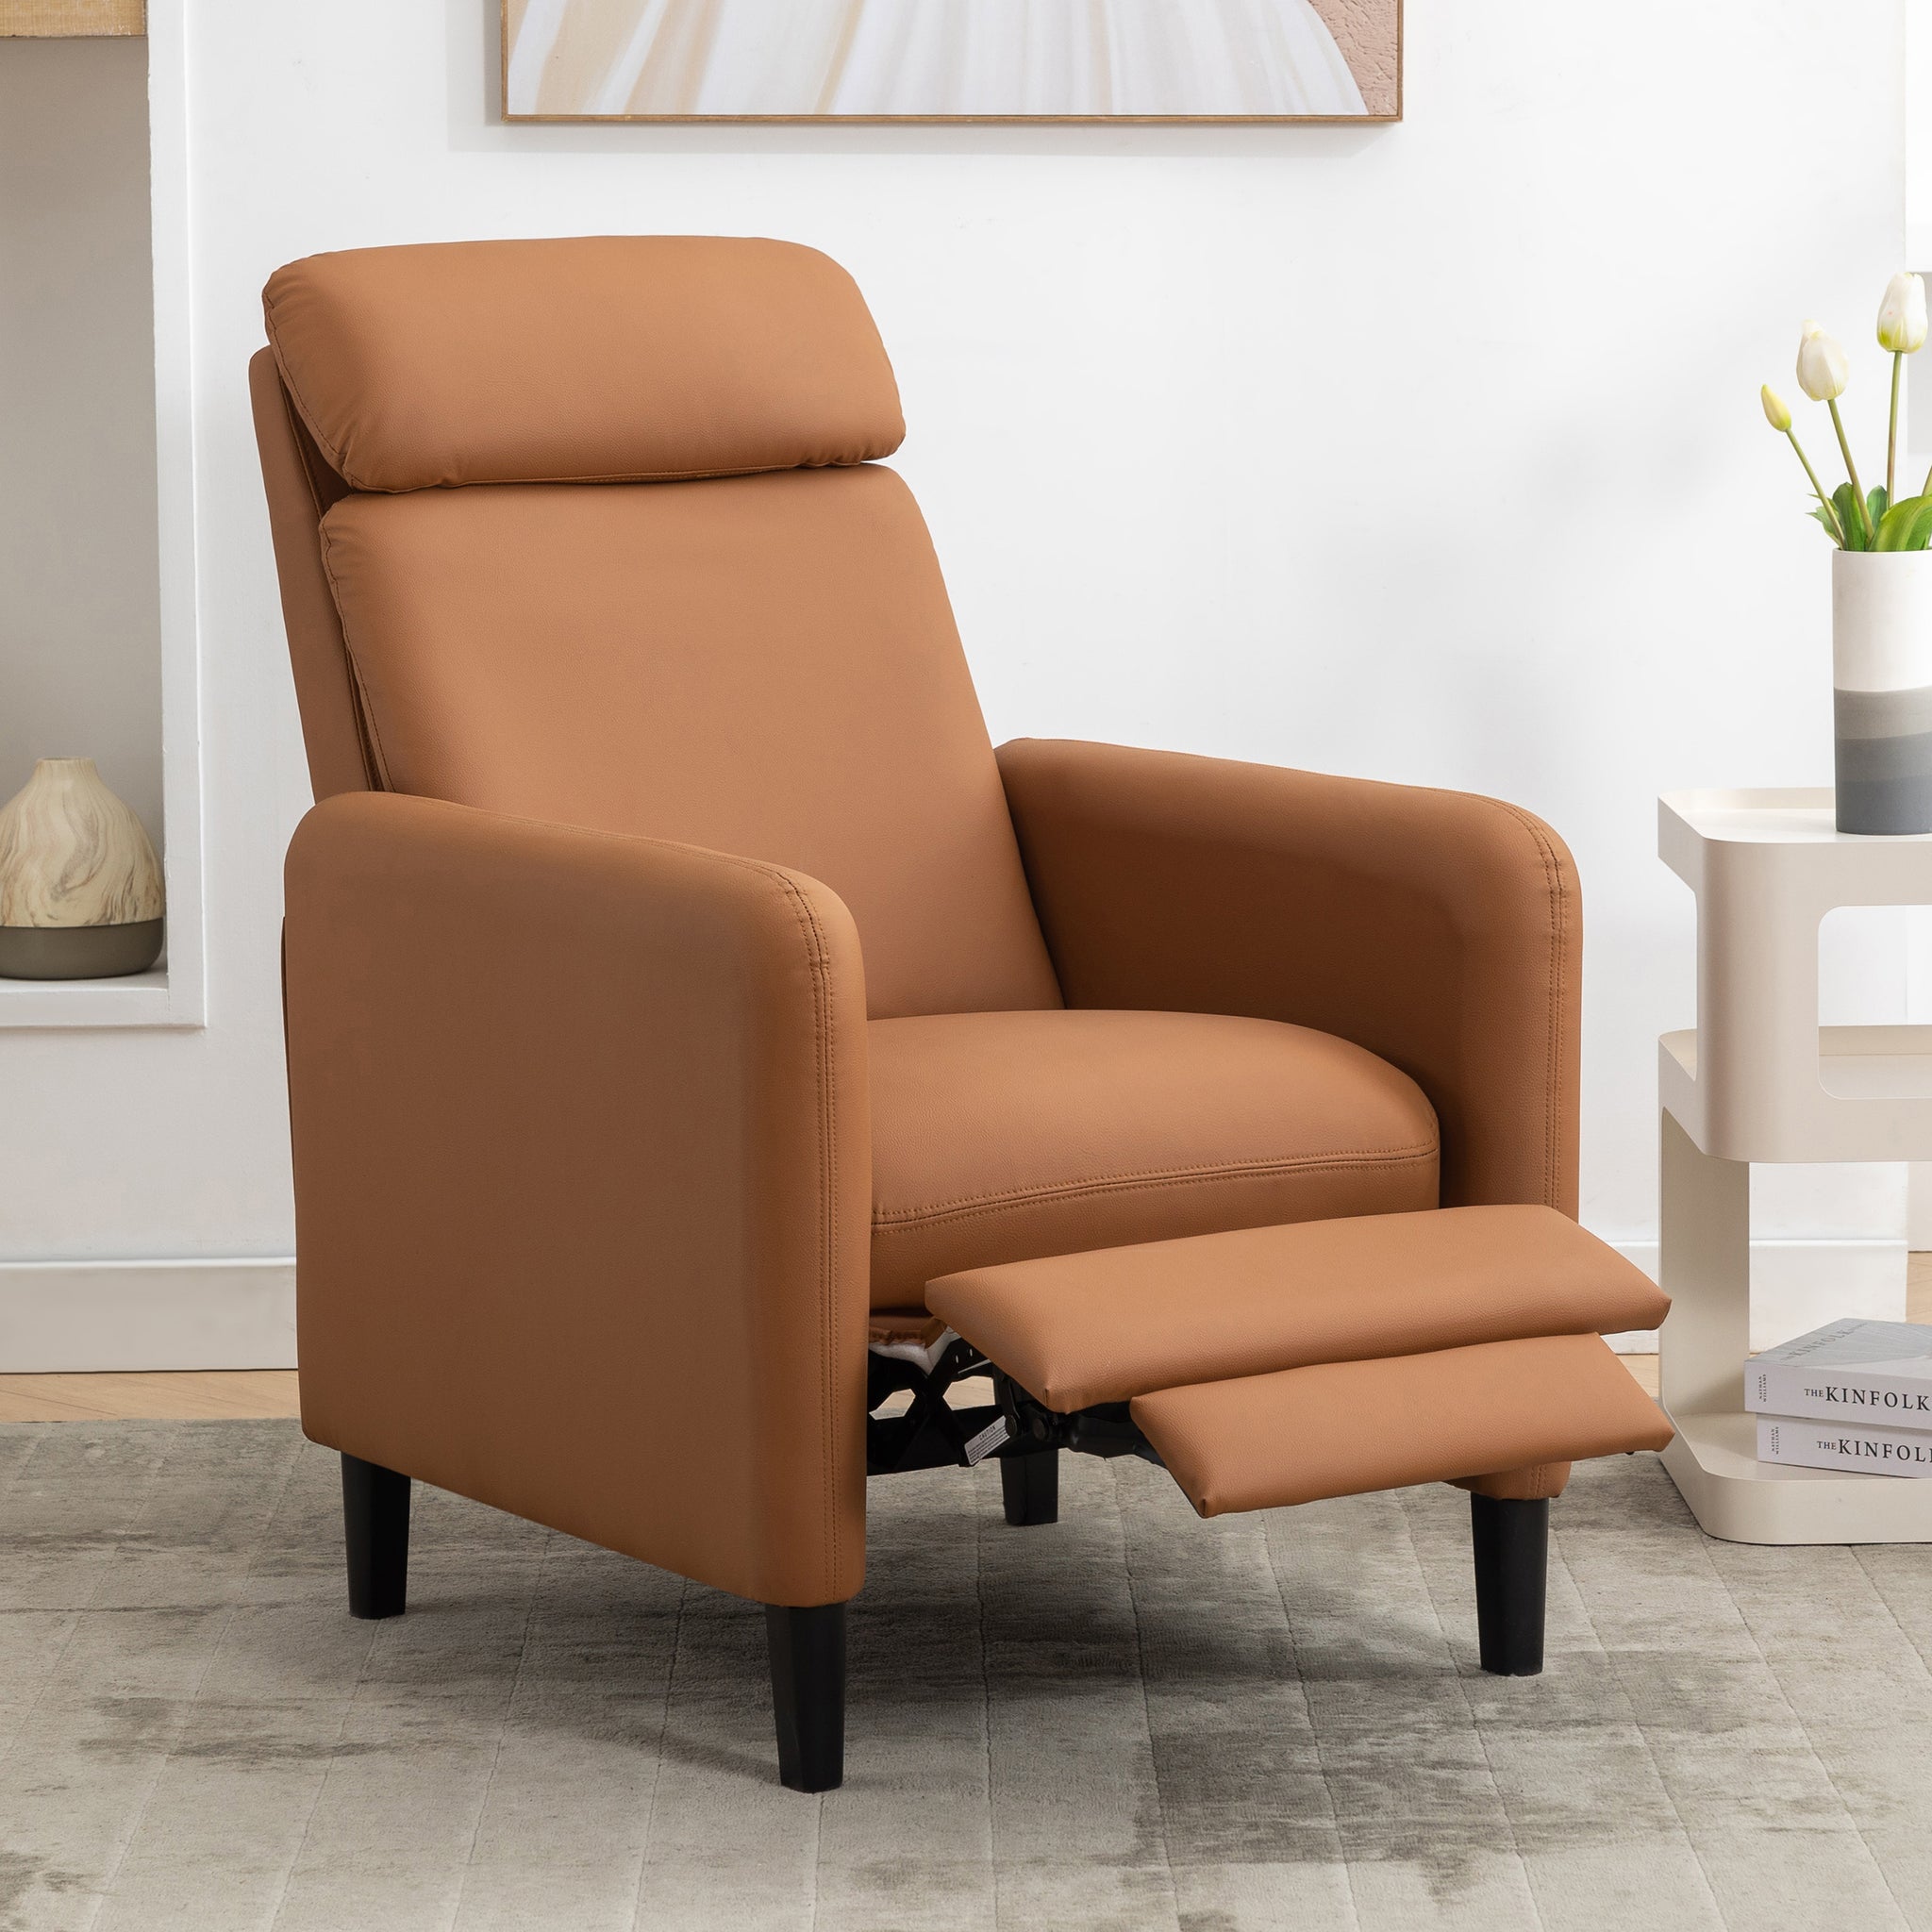 Modern Artistic Color Design Adjustable Recliner Chair burnt orange-pu leather